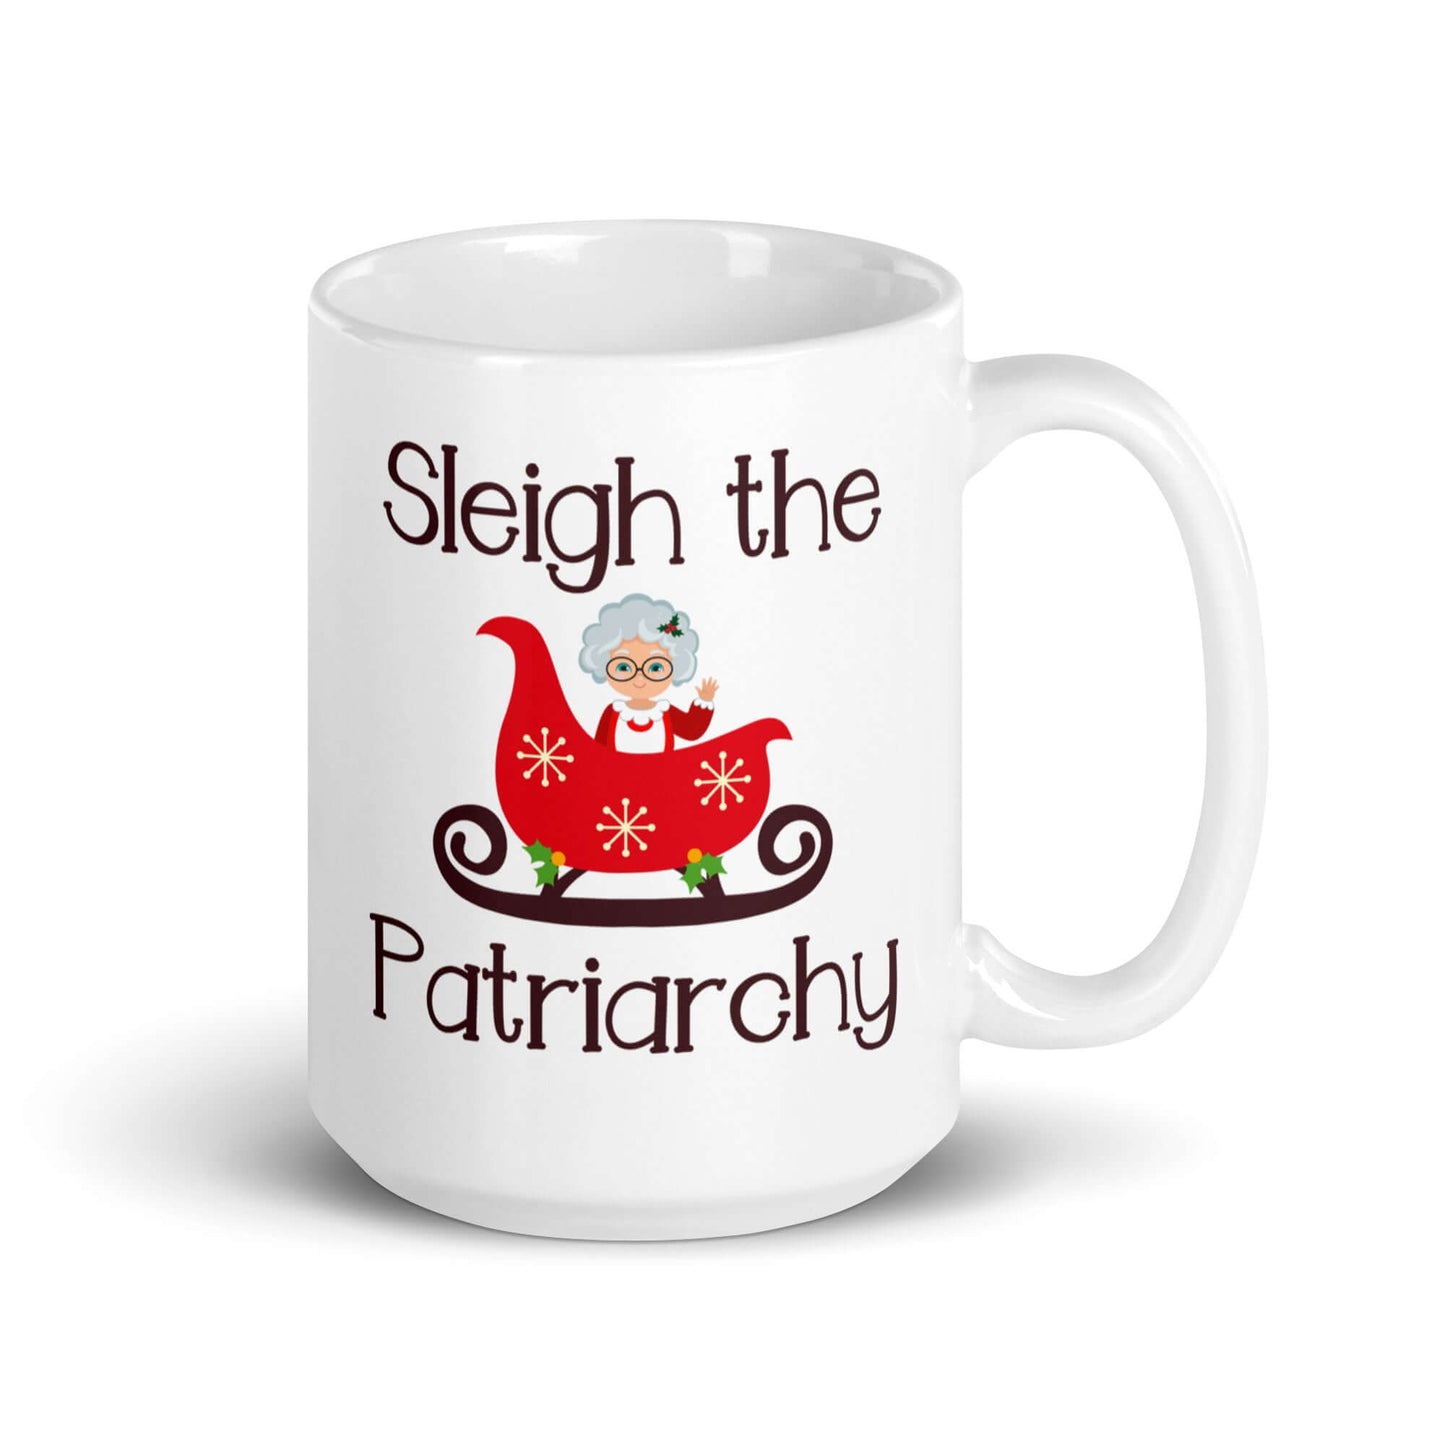 Sleigh the patriarchy ceramic mug